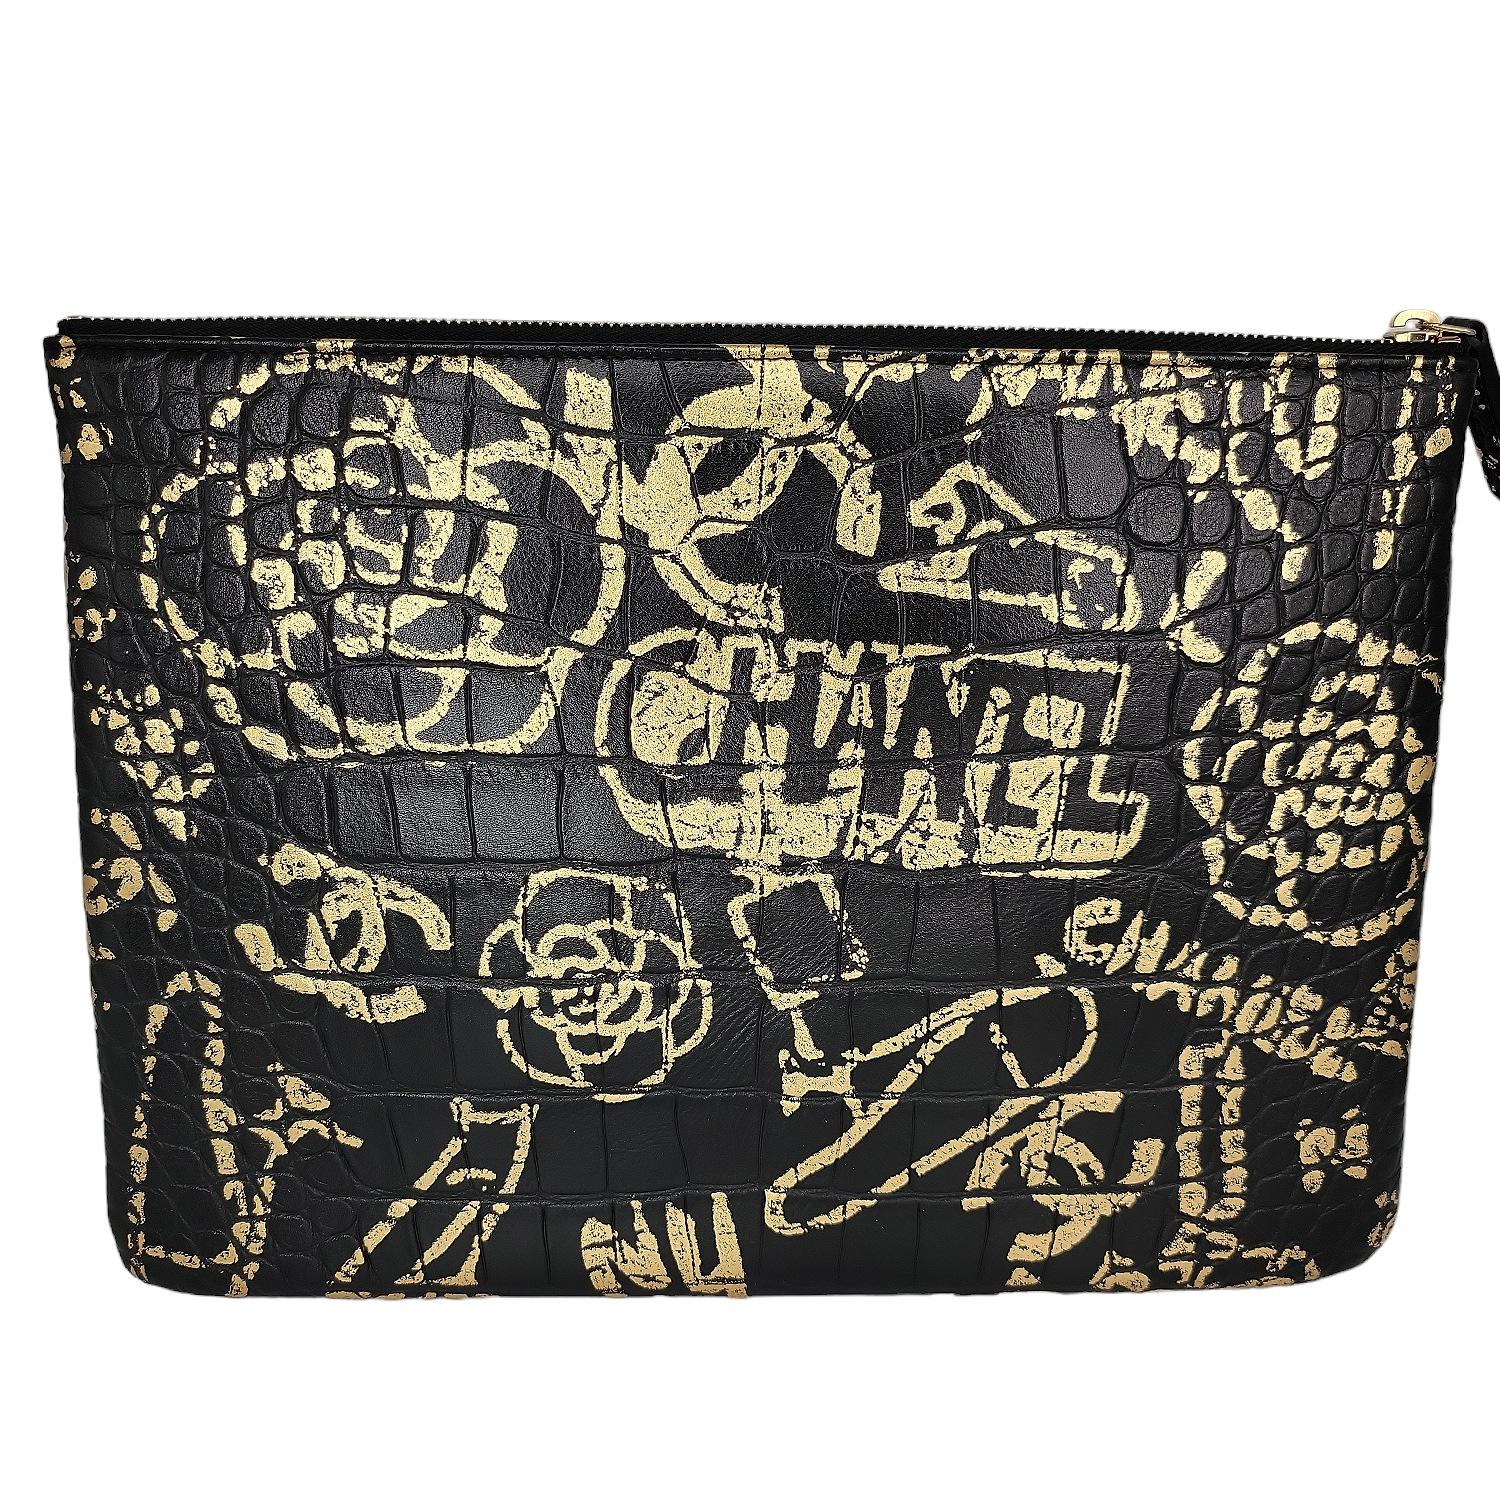 Aus der Pre-Fall 2019 Metiers d'Art Collection; Chanel Black And Gold Croc-Embossed 2.55 Reissue. Diese stilvolle Tasche ist aus luxuriösem, schwarzem Leder mit Krokoprägung gefertigt und mit stilvollem goldenem Graffiti und goldener Hardware